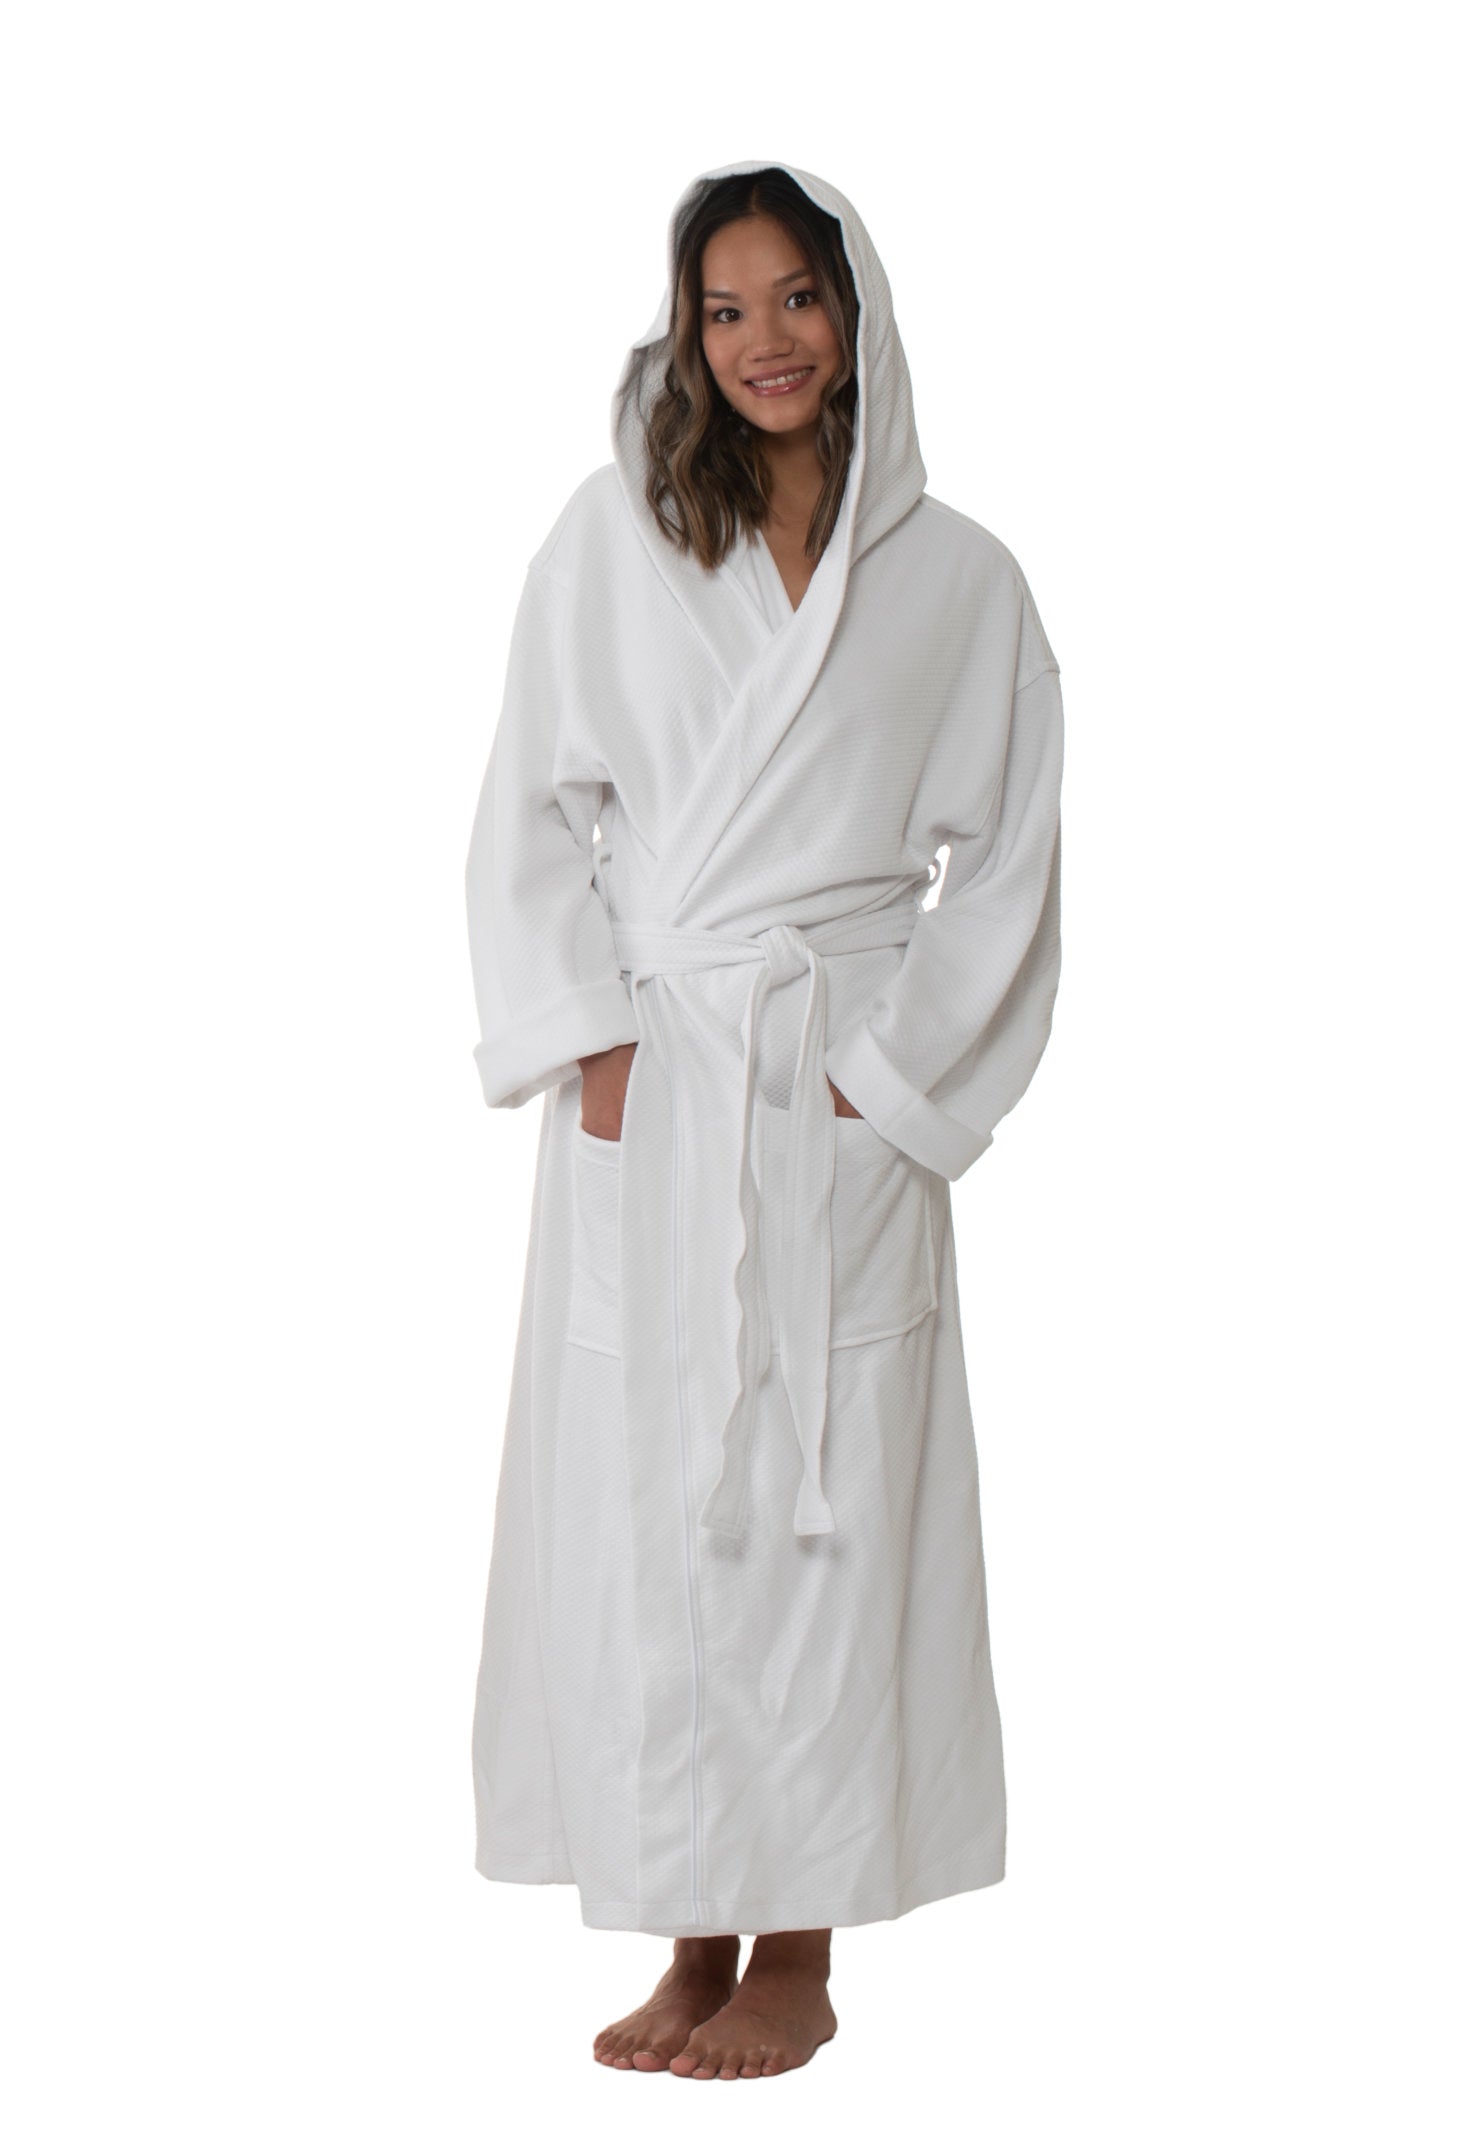 Robe de chambre en ratine avec capuchon Carolyn Design #90215